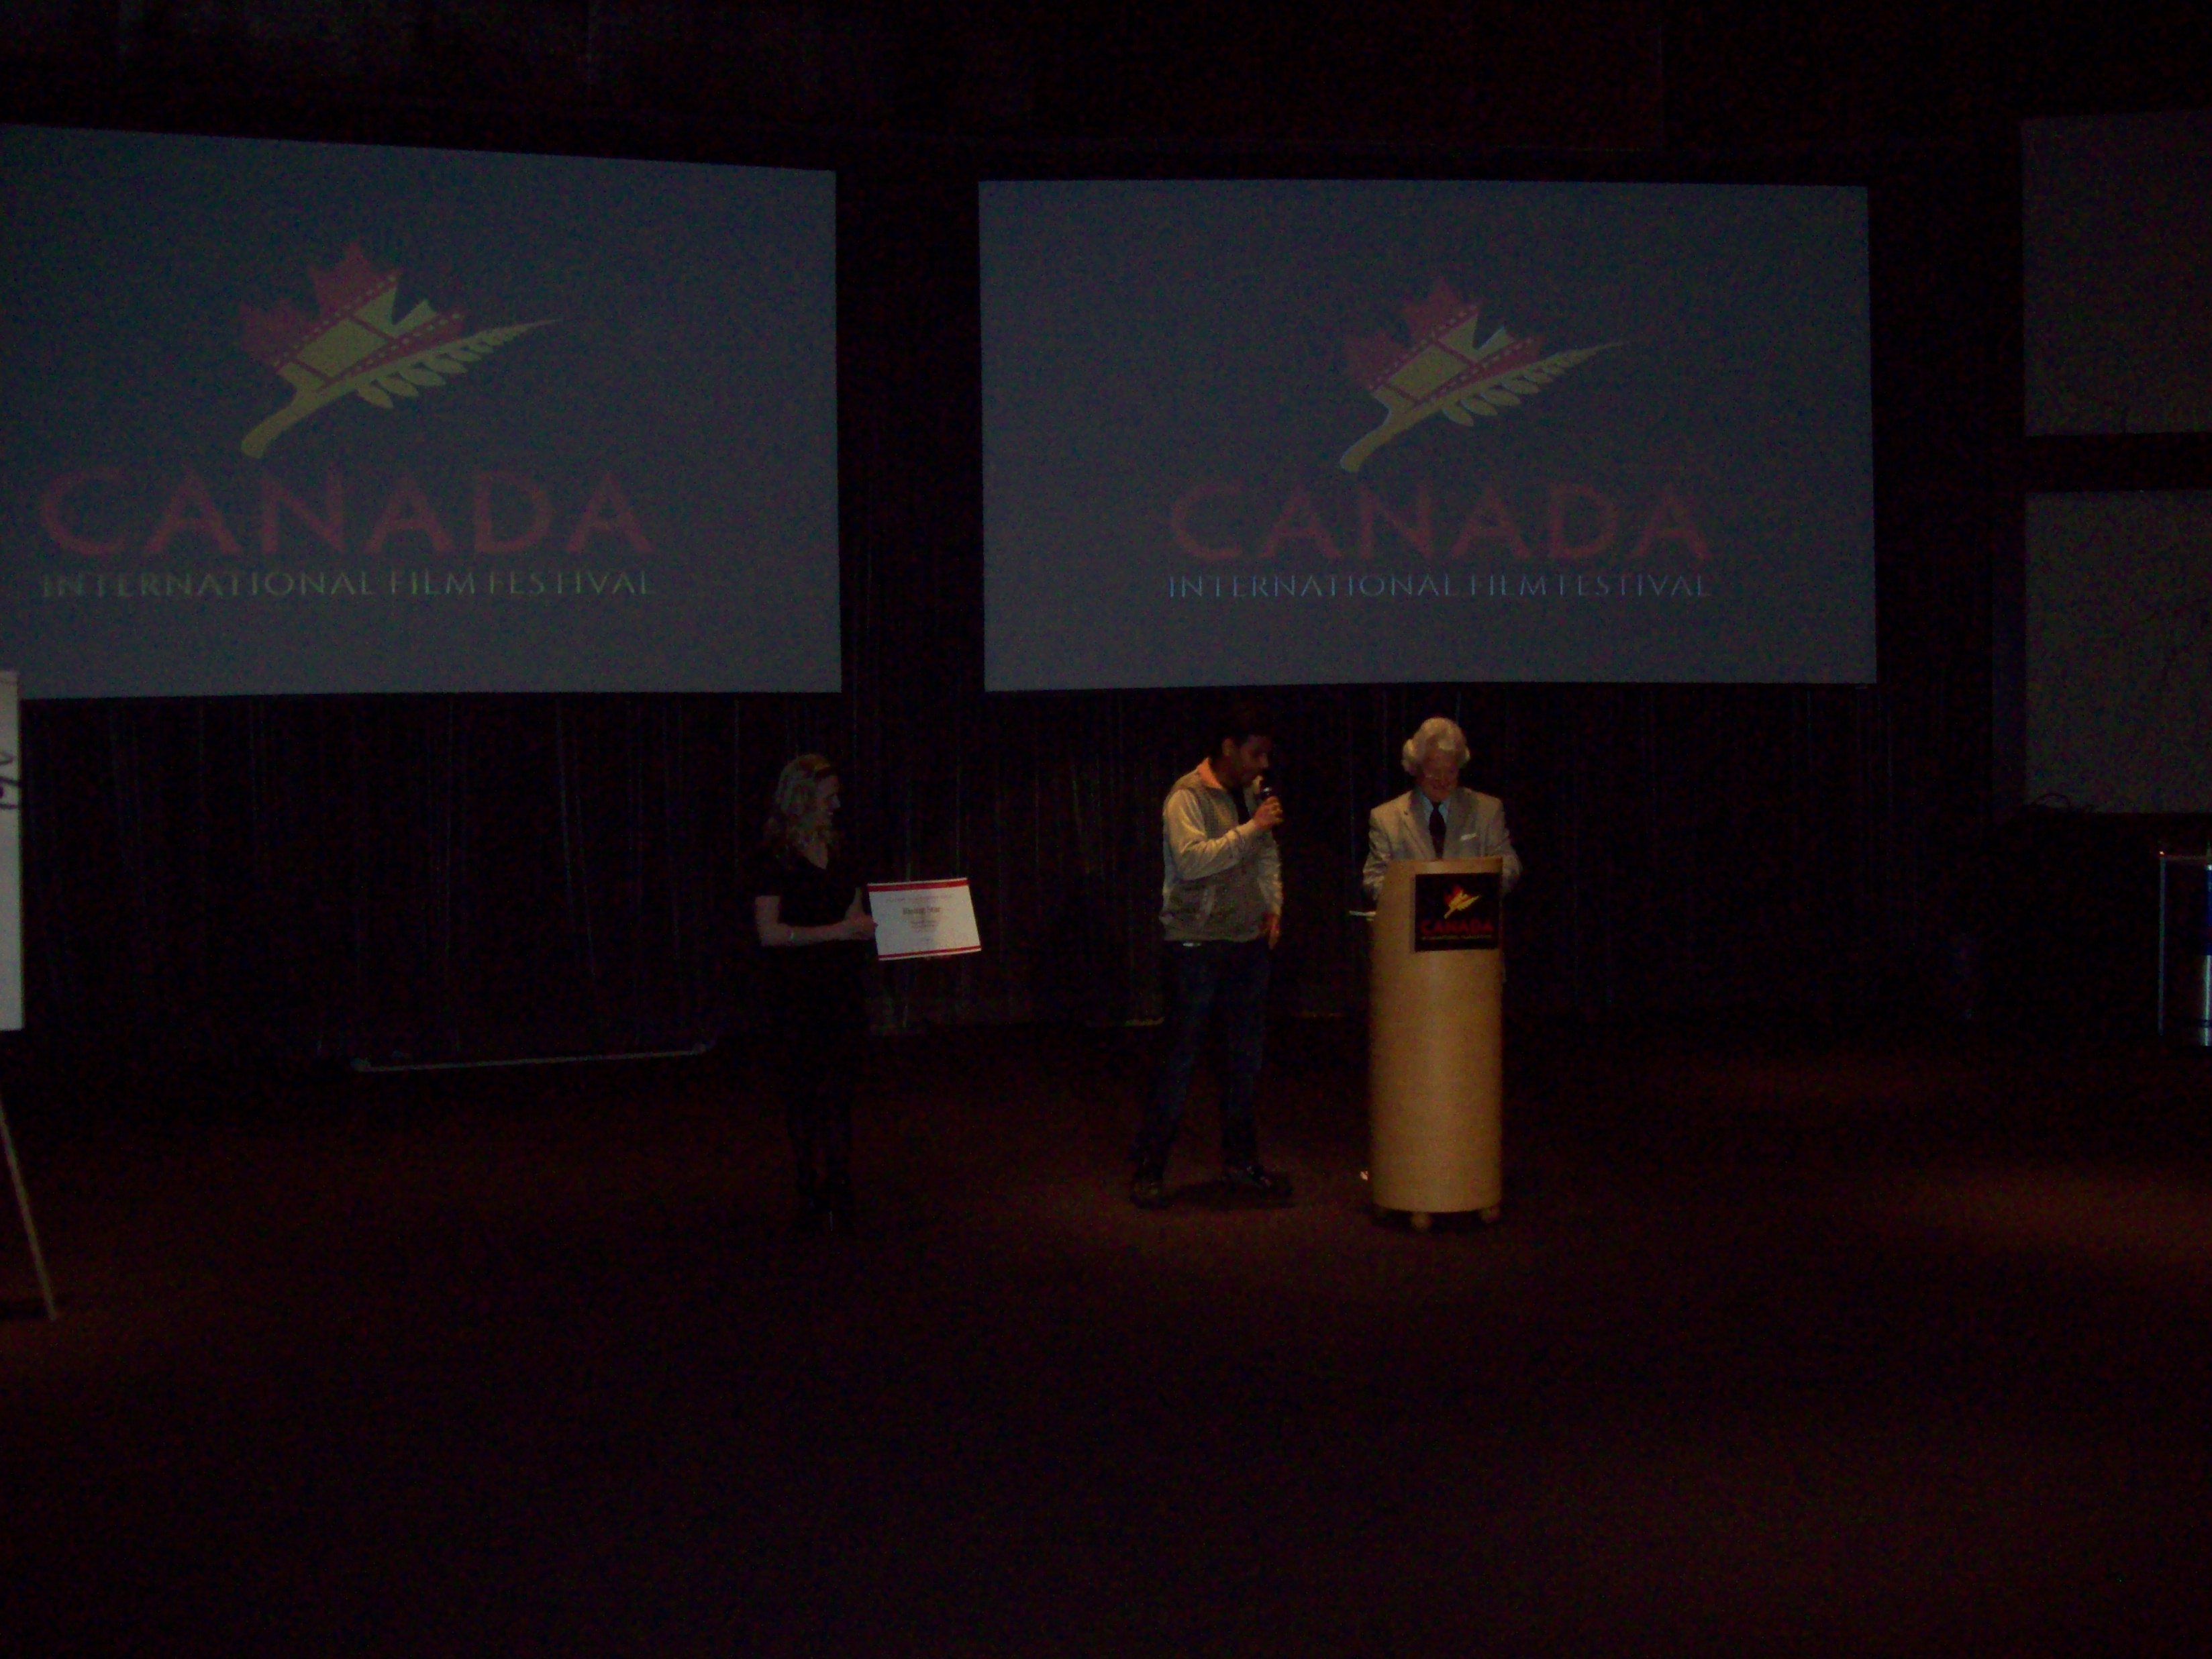 Canada International Film Festival-2010